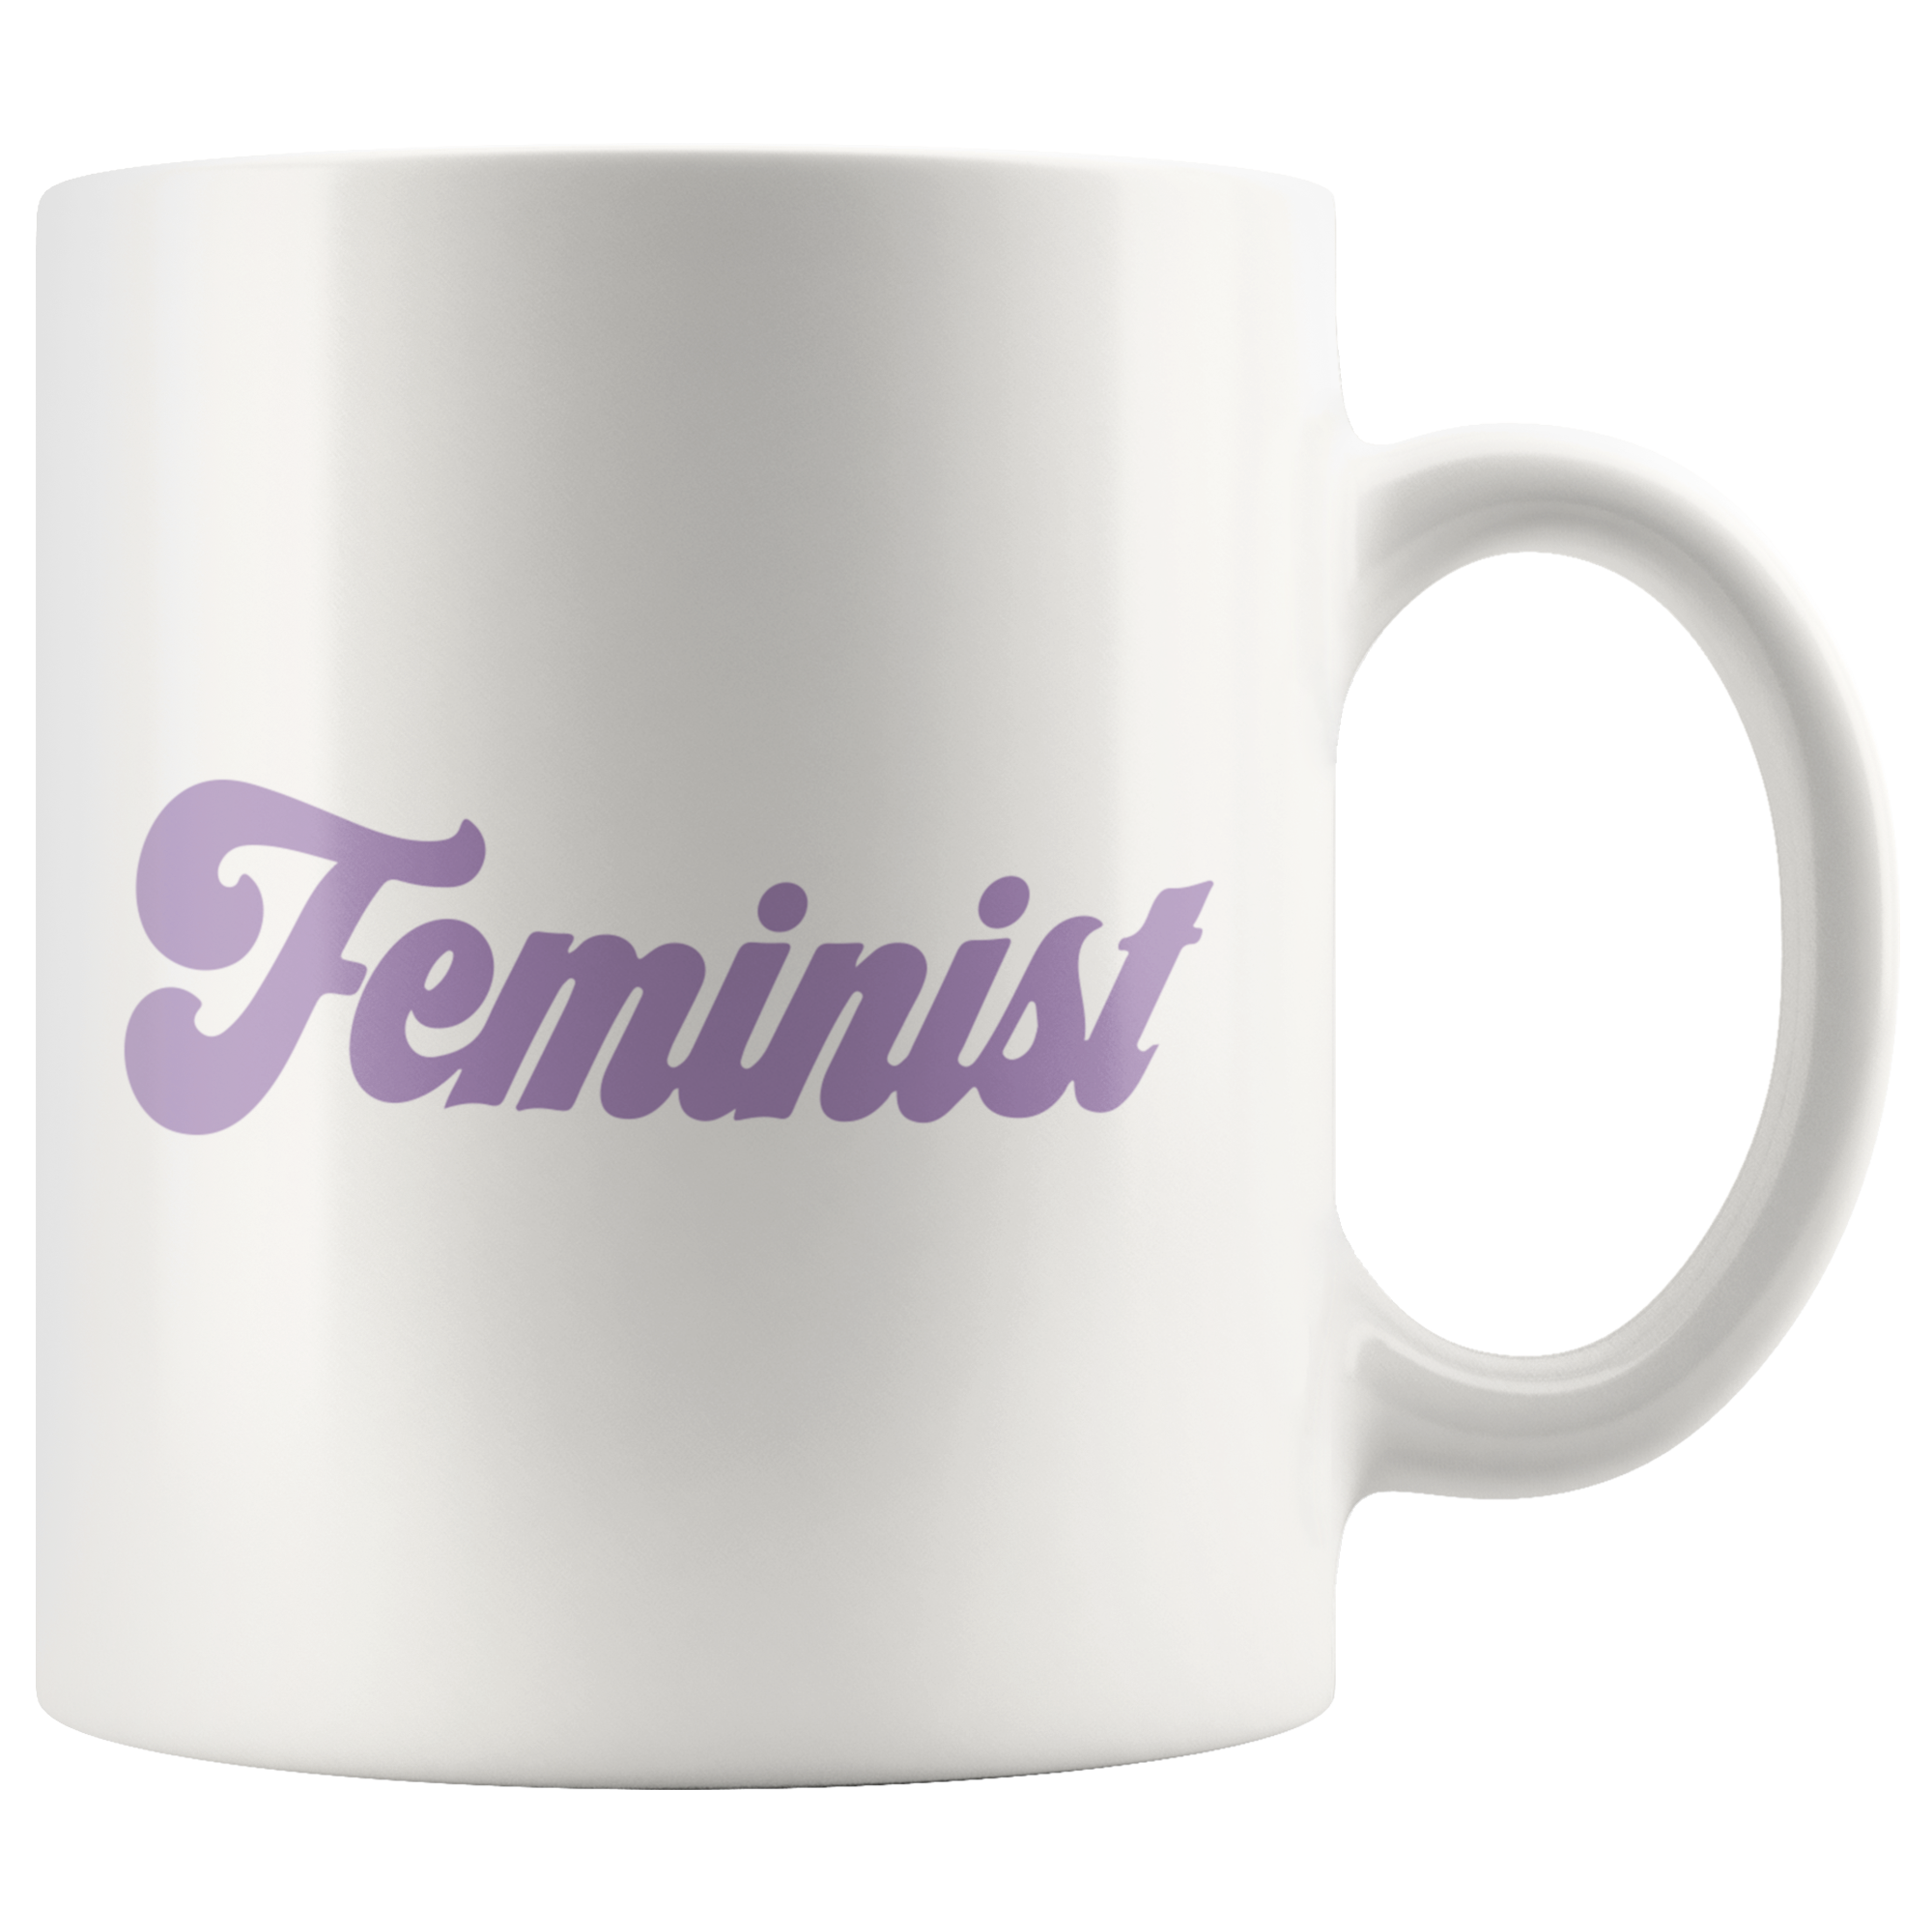 Feminist Coffee Mug